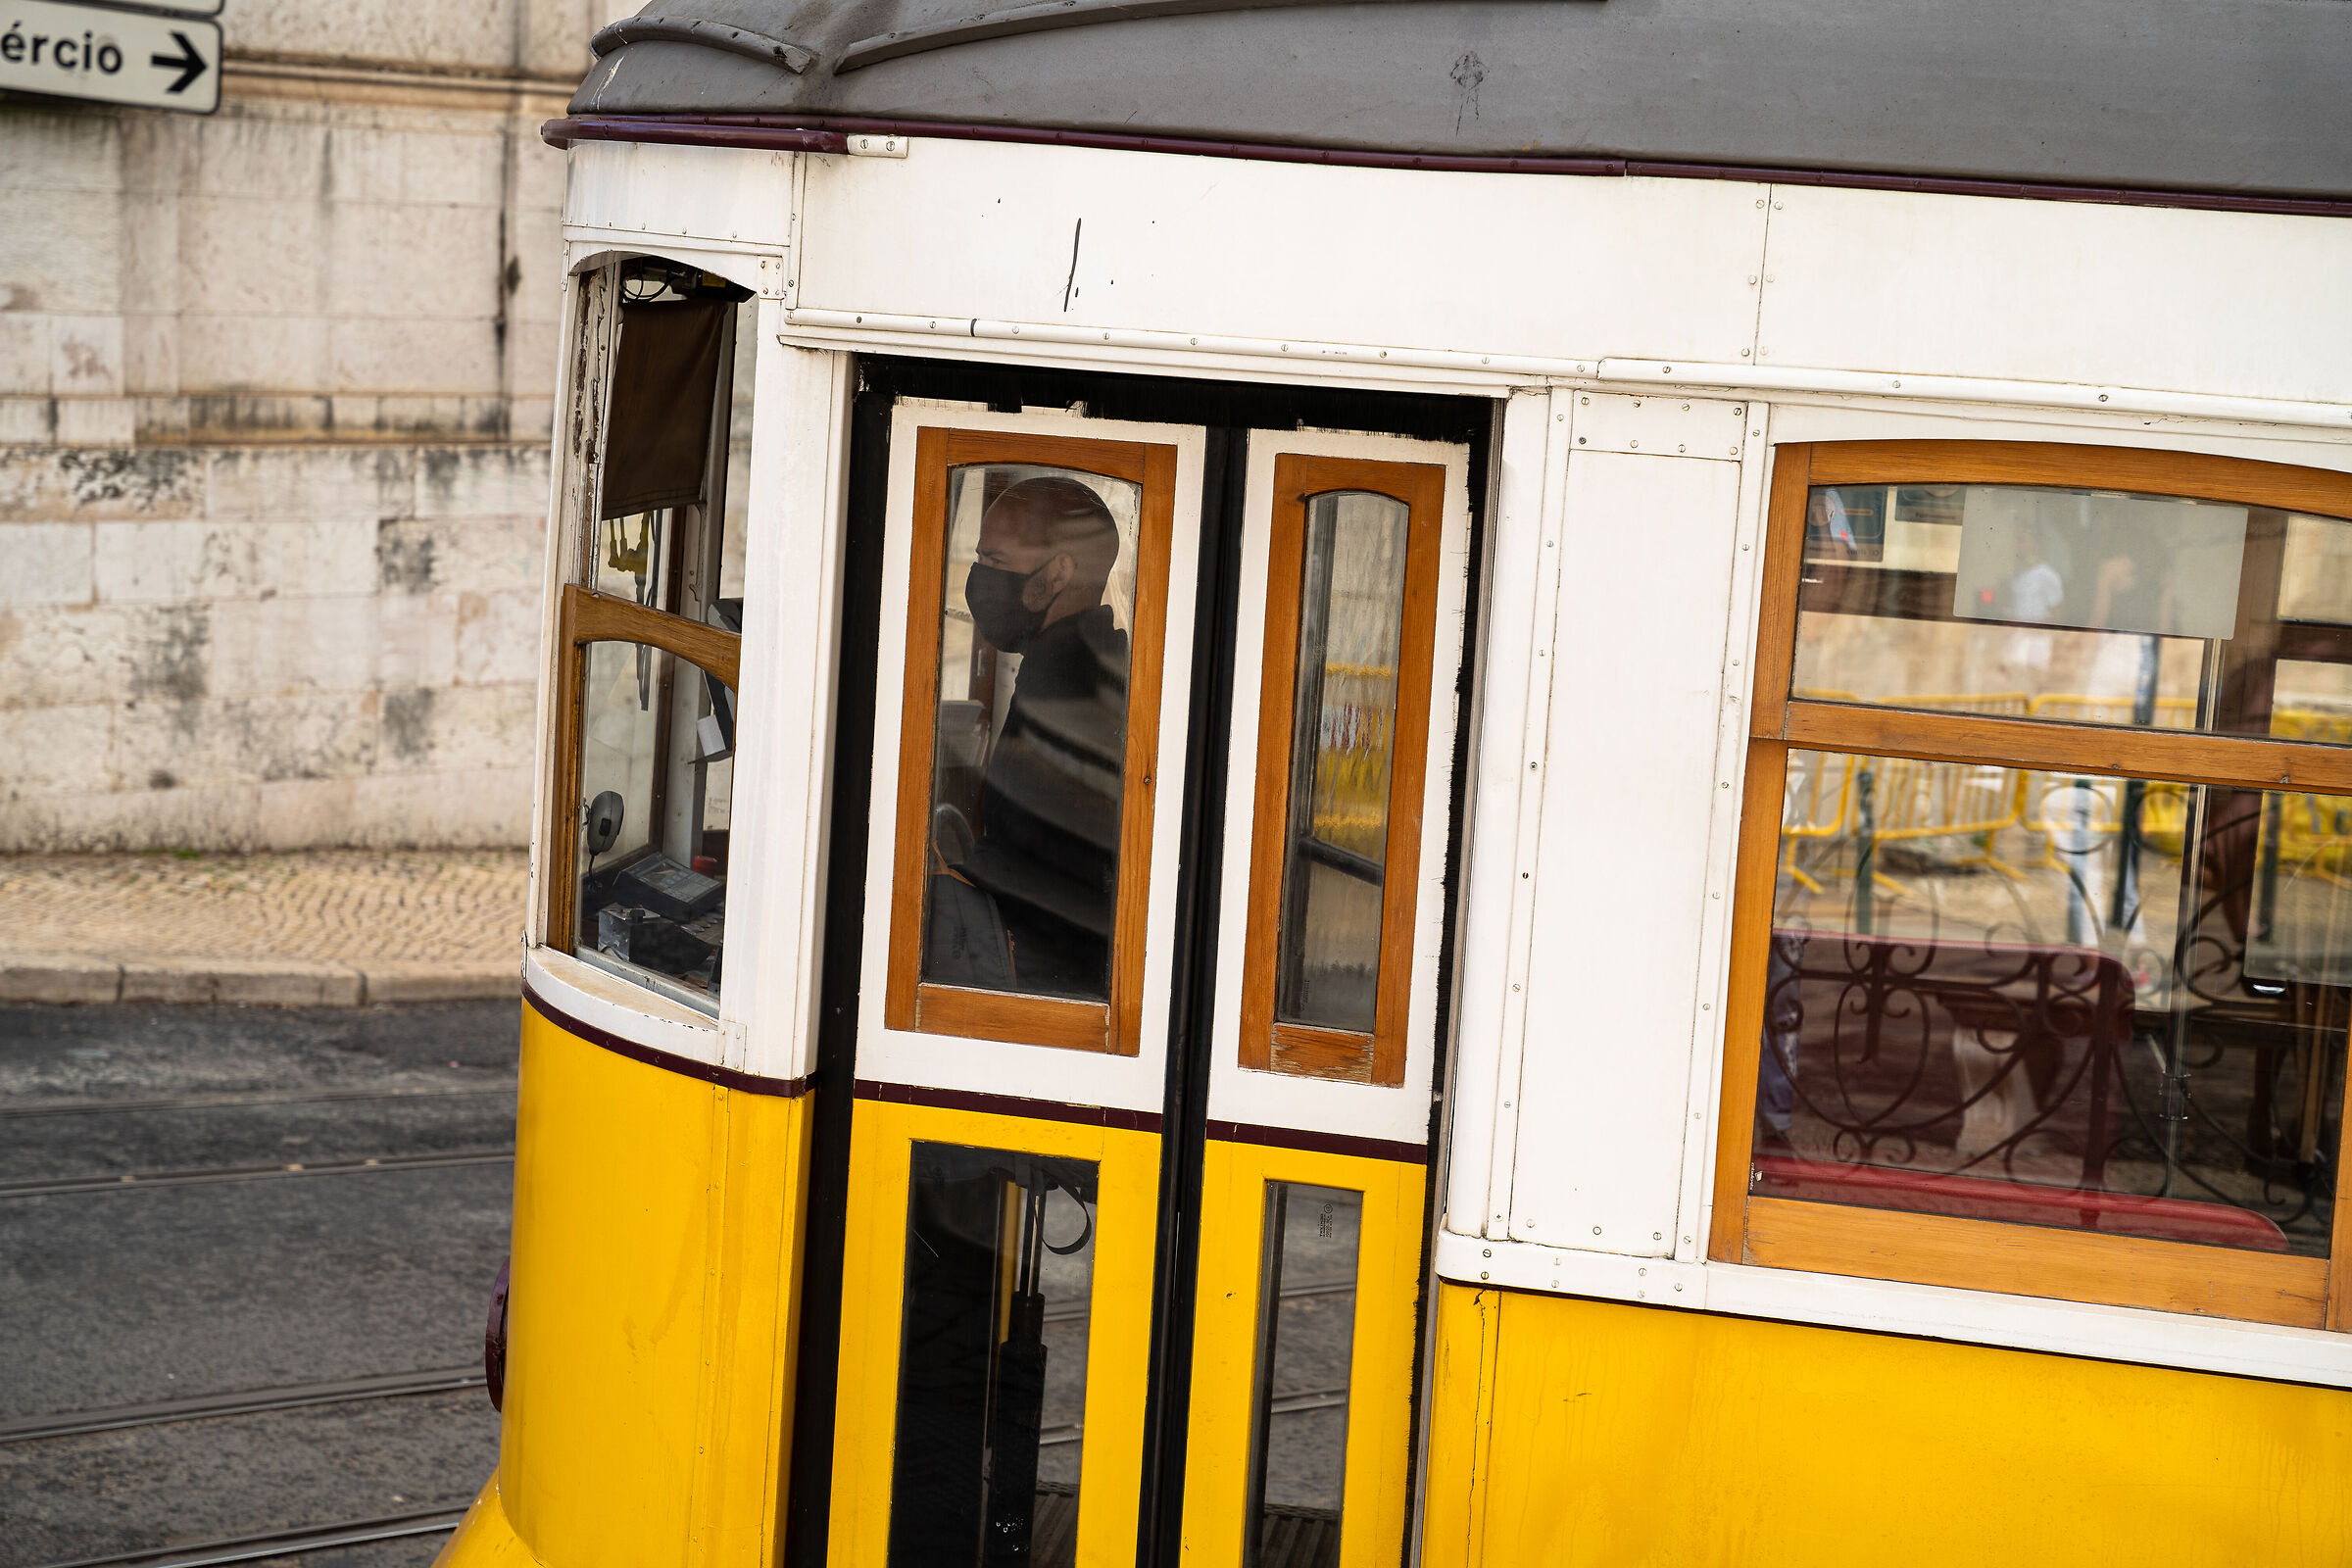 Trams in Lisbon...